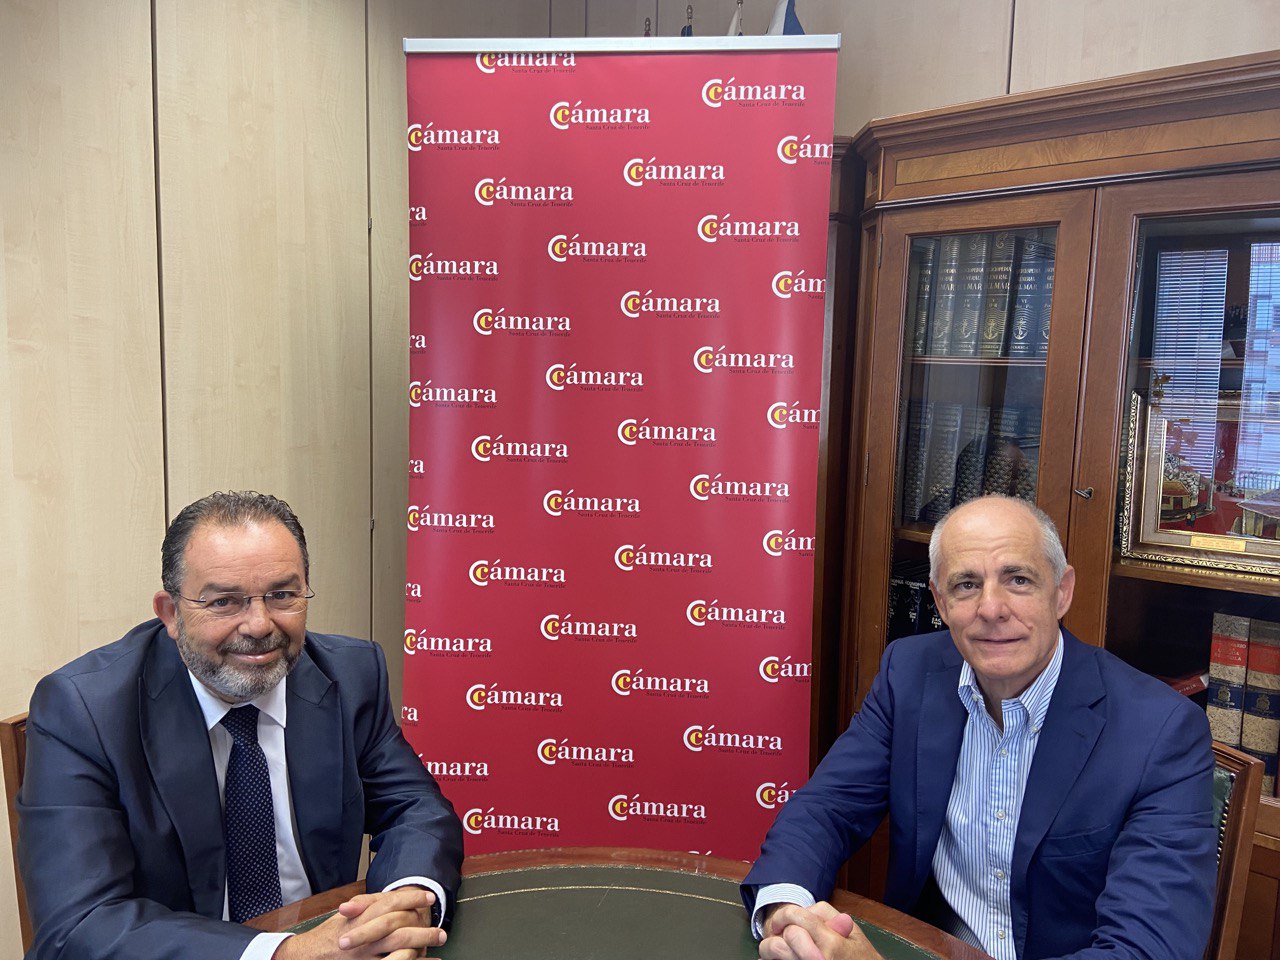 Asociación de Asesores Fiscales de Canarias y la Cámara de Comercio de Tenerife se reúnen para buscar sinergias, potenciar el desarrollo económico y apoyar empresas y tinerfeños -